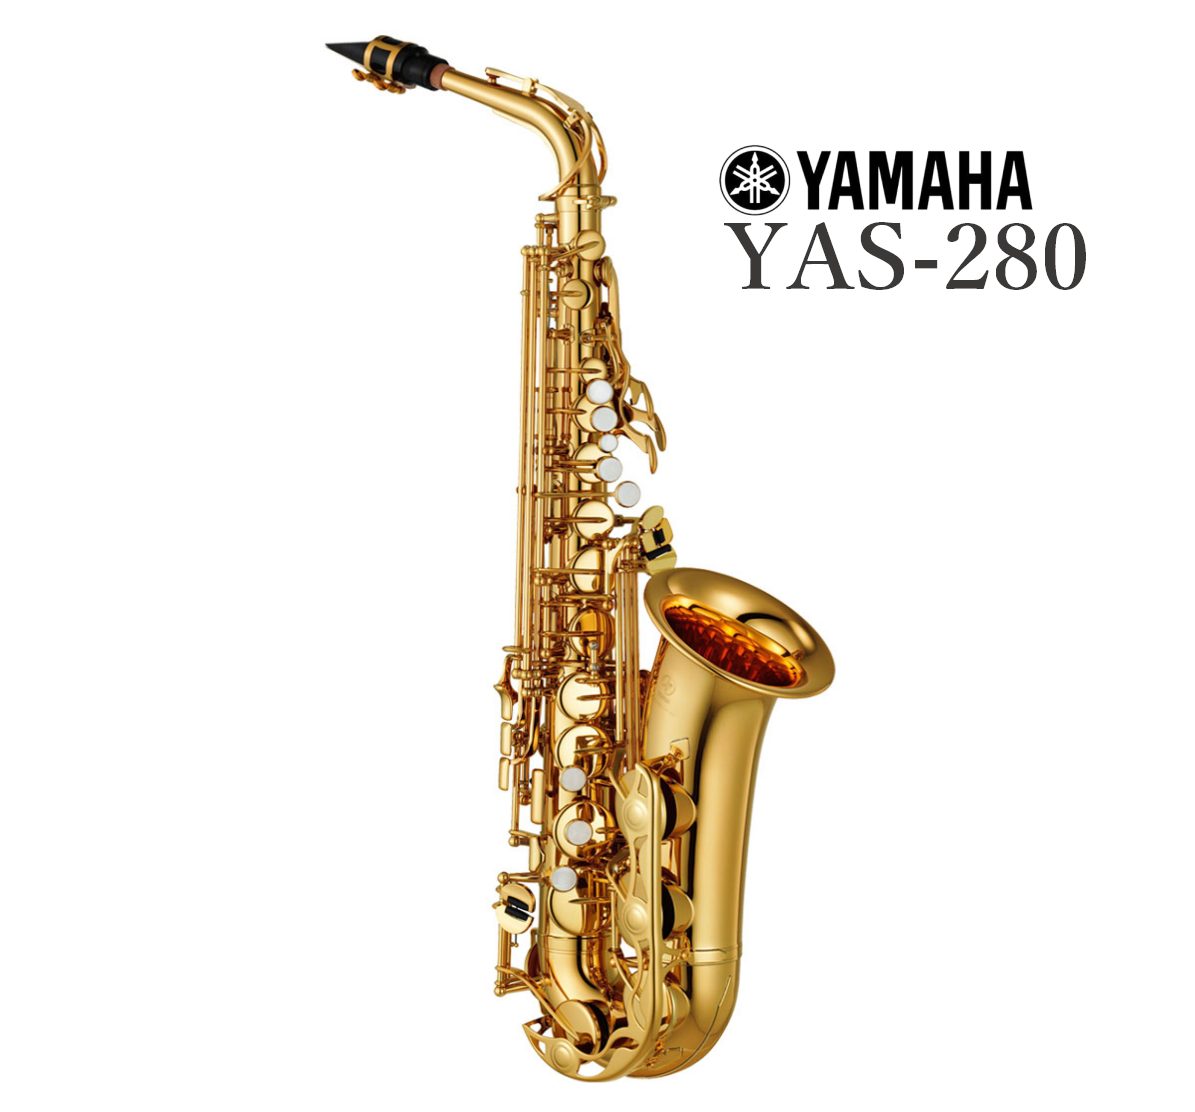 YAMAHAYAS-280